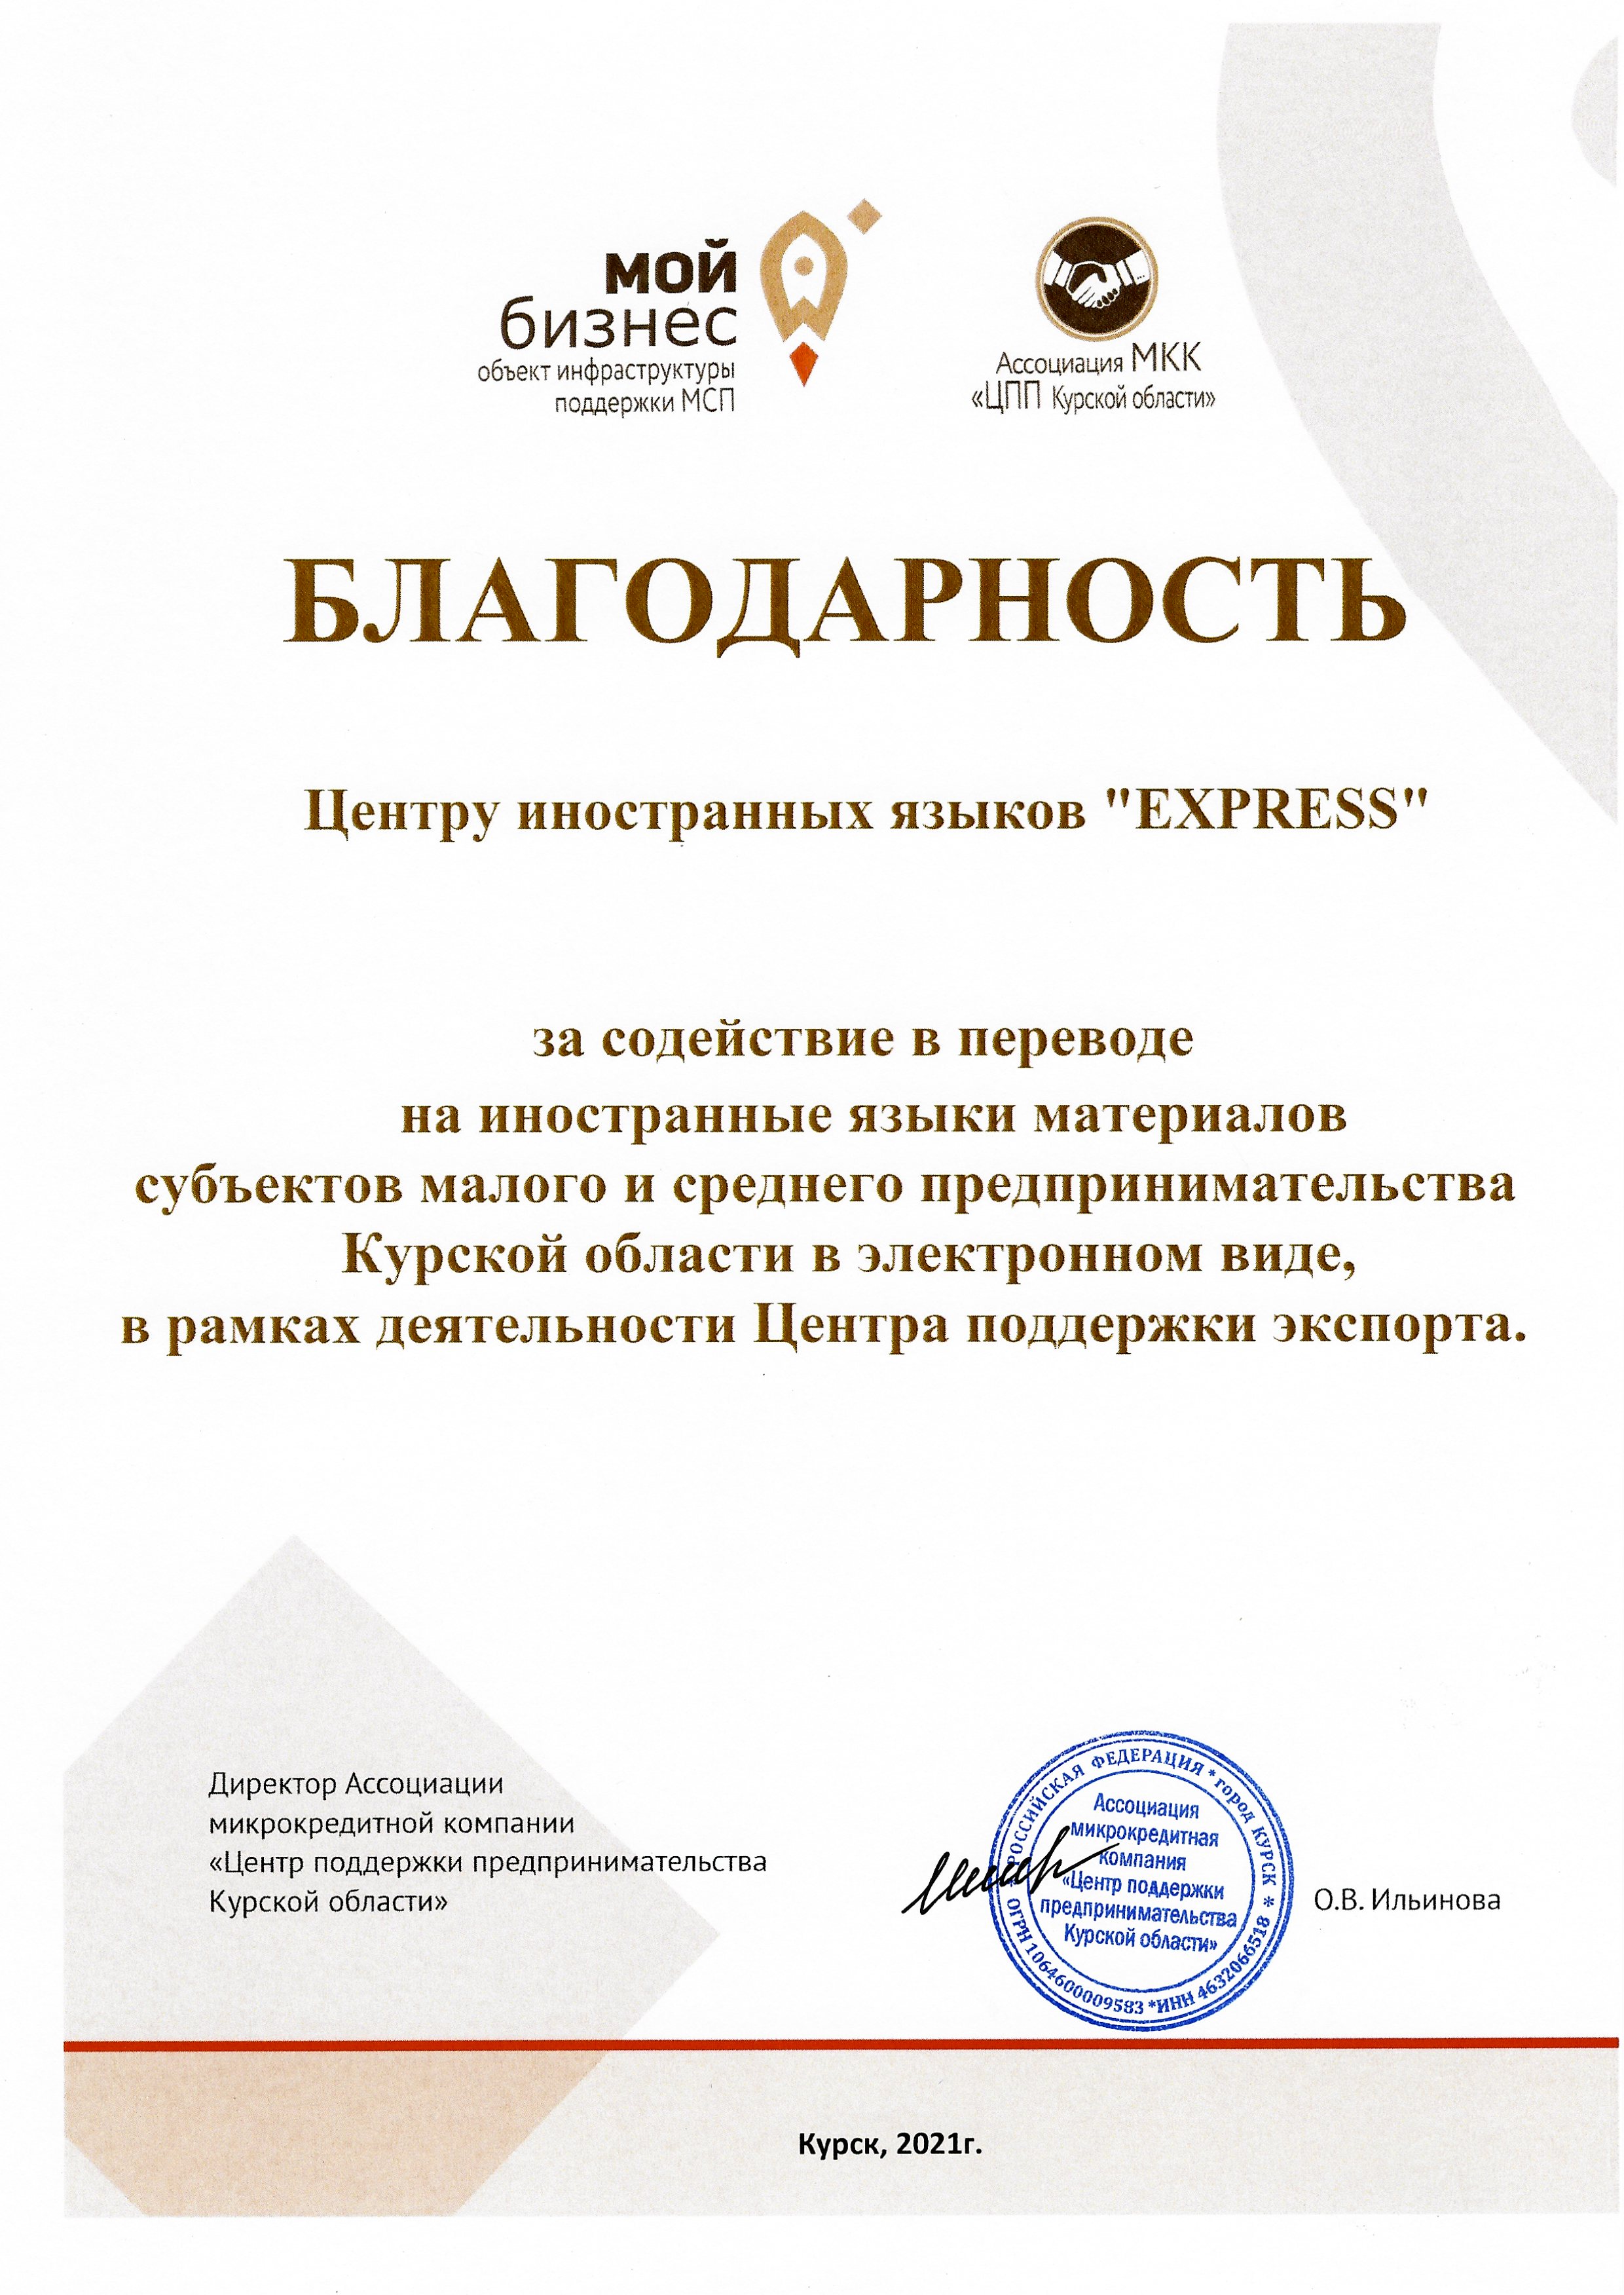 Рекомендация Центра поддержки экспорта Курской области